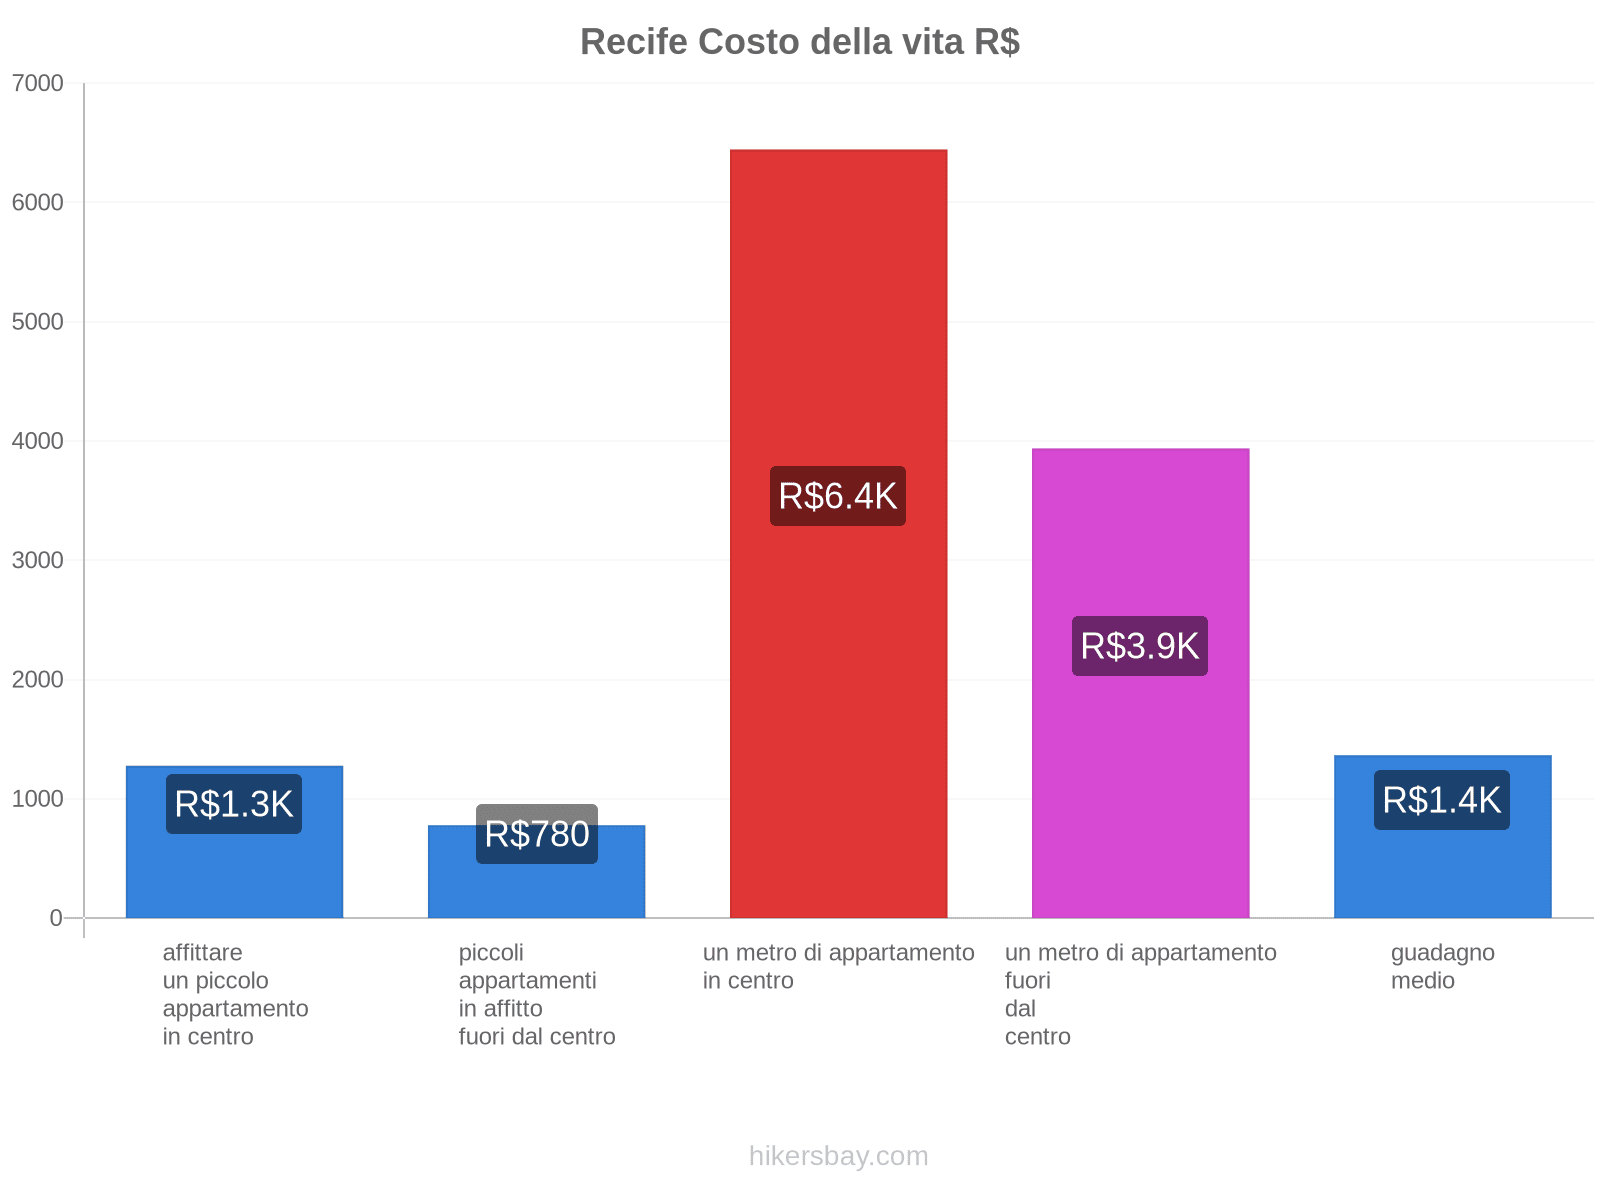 Recife costo della vita hikersbay.com